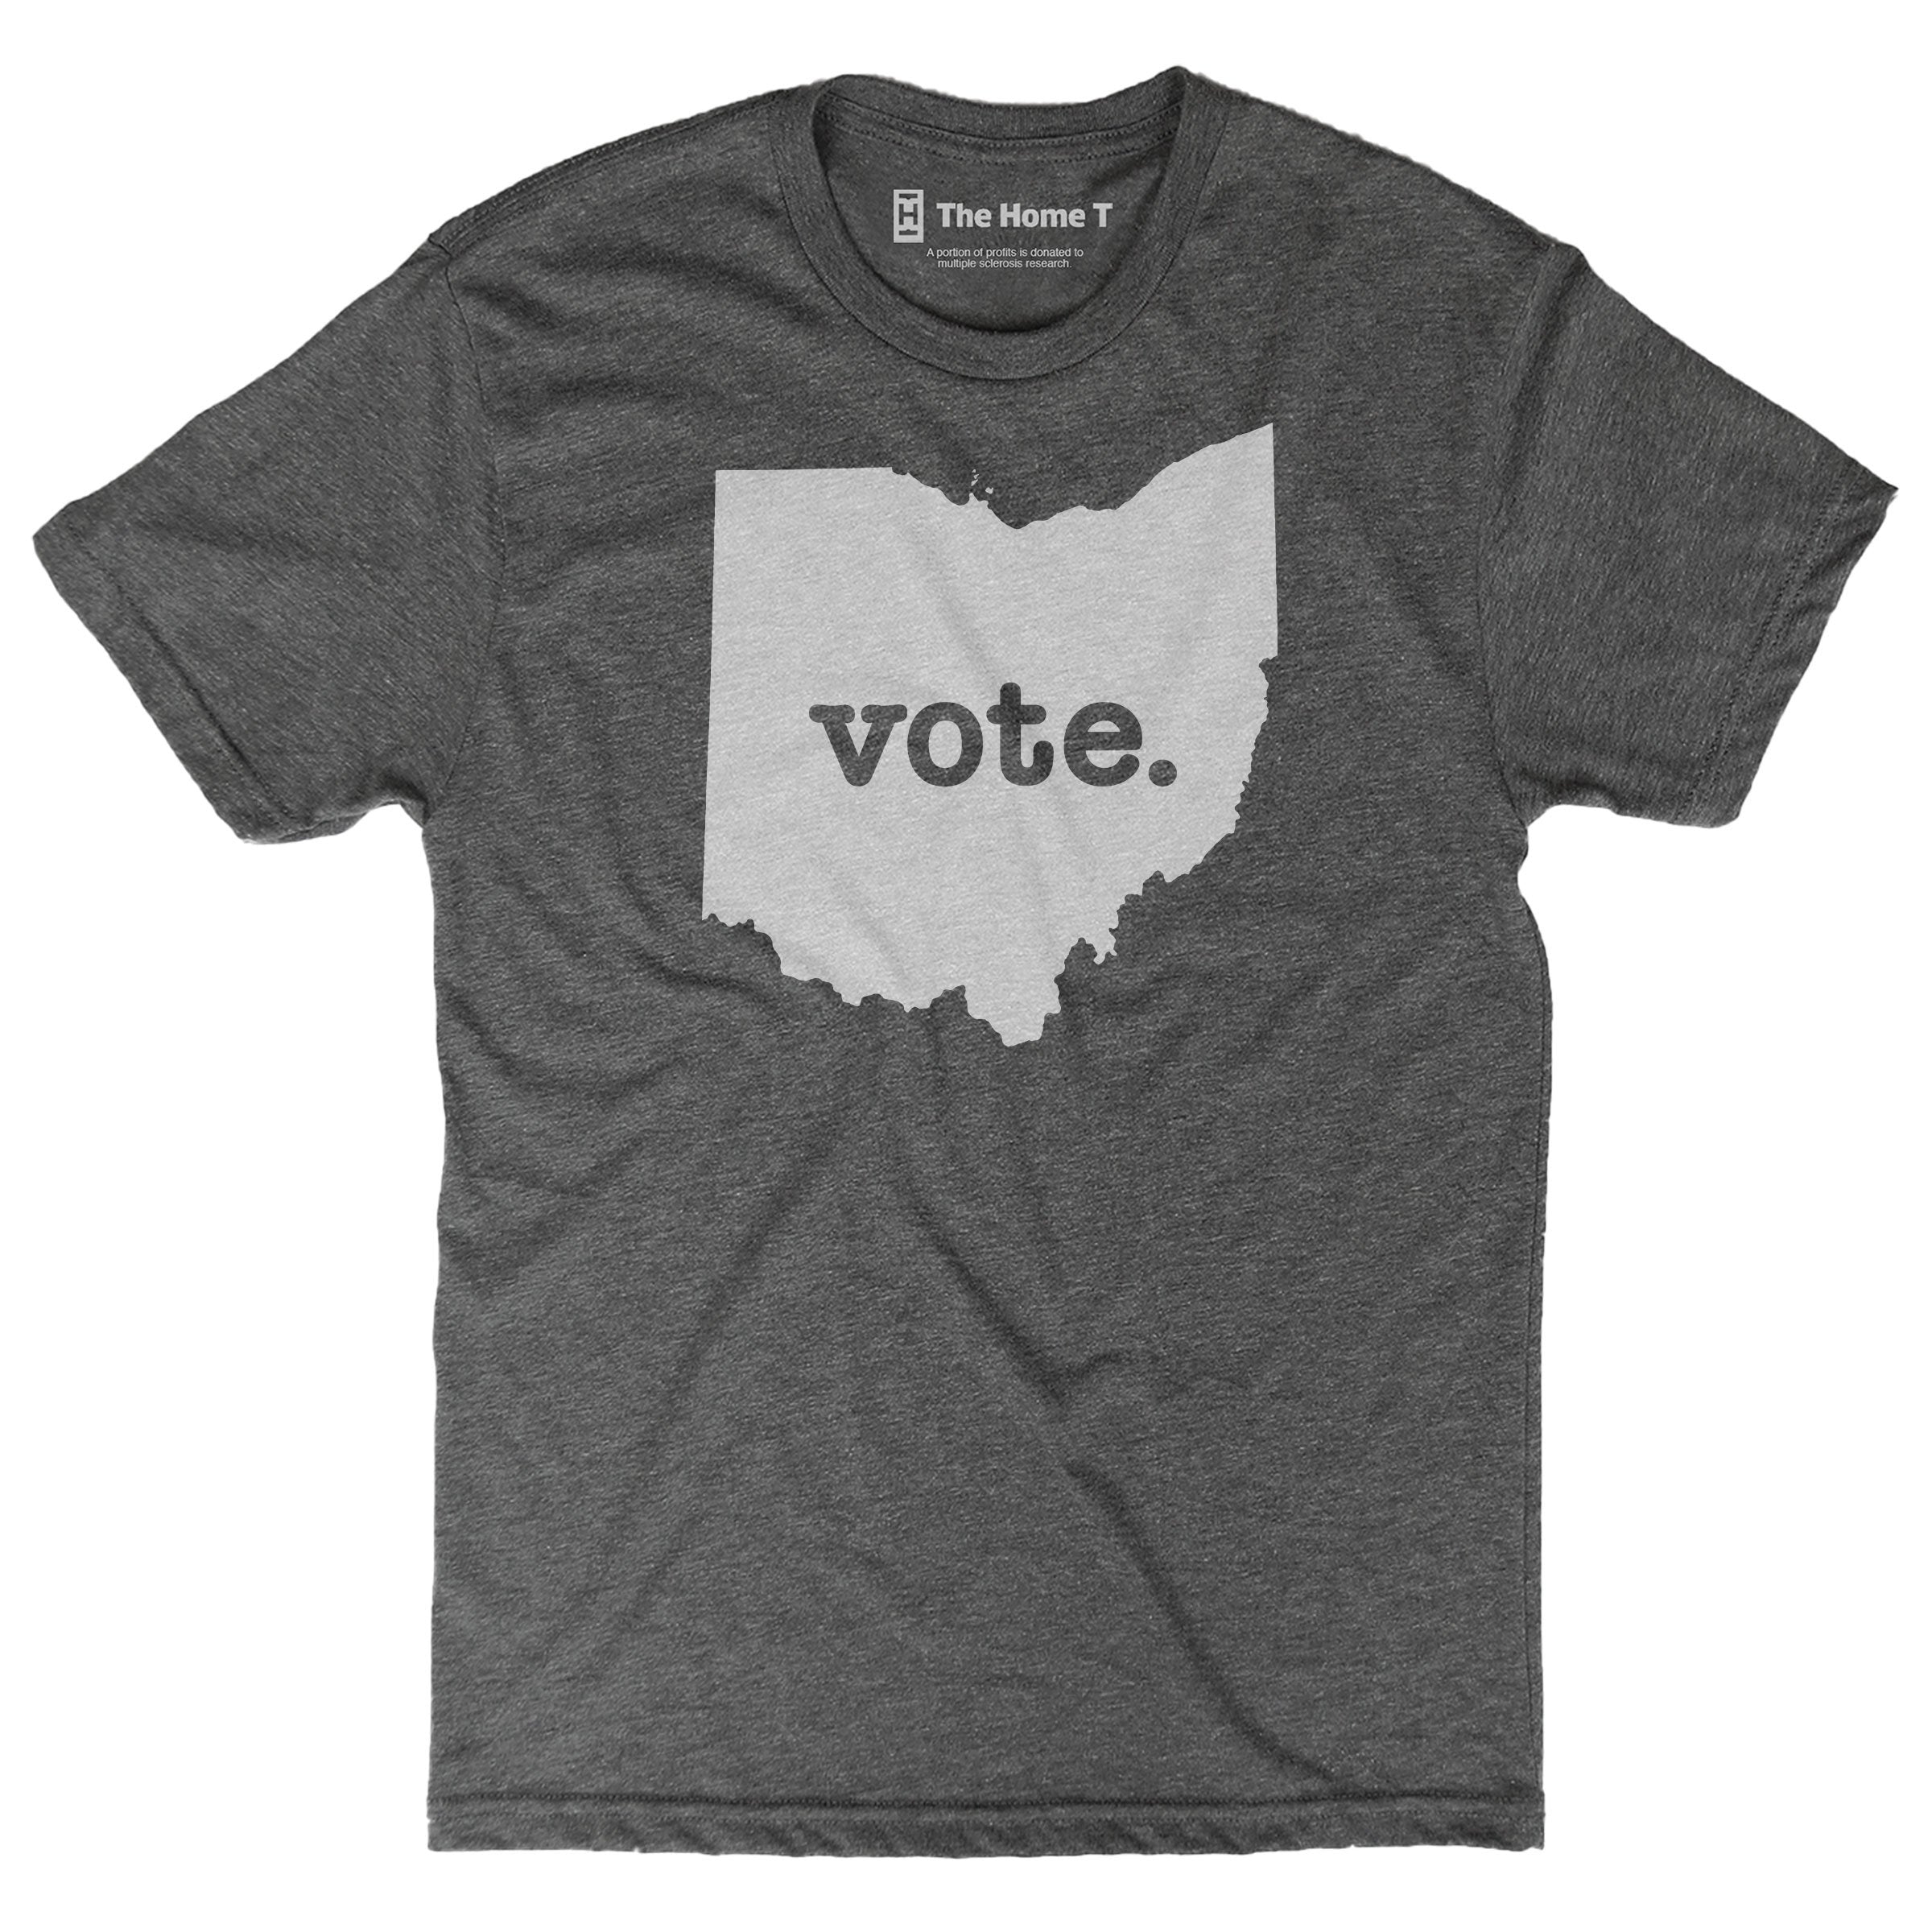 Ohio Vote Home T Vote The Home T